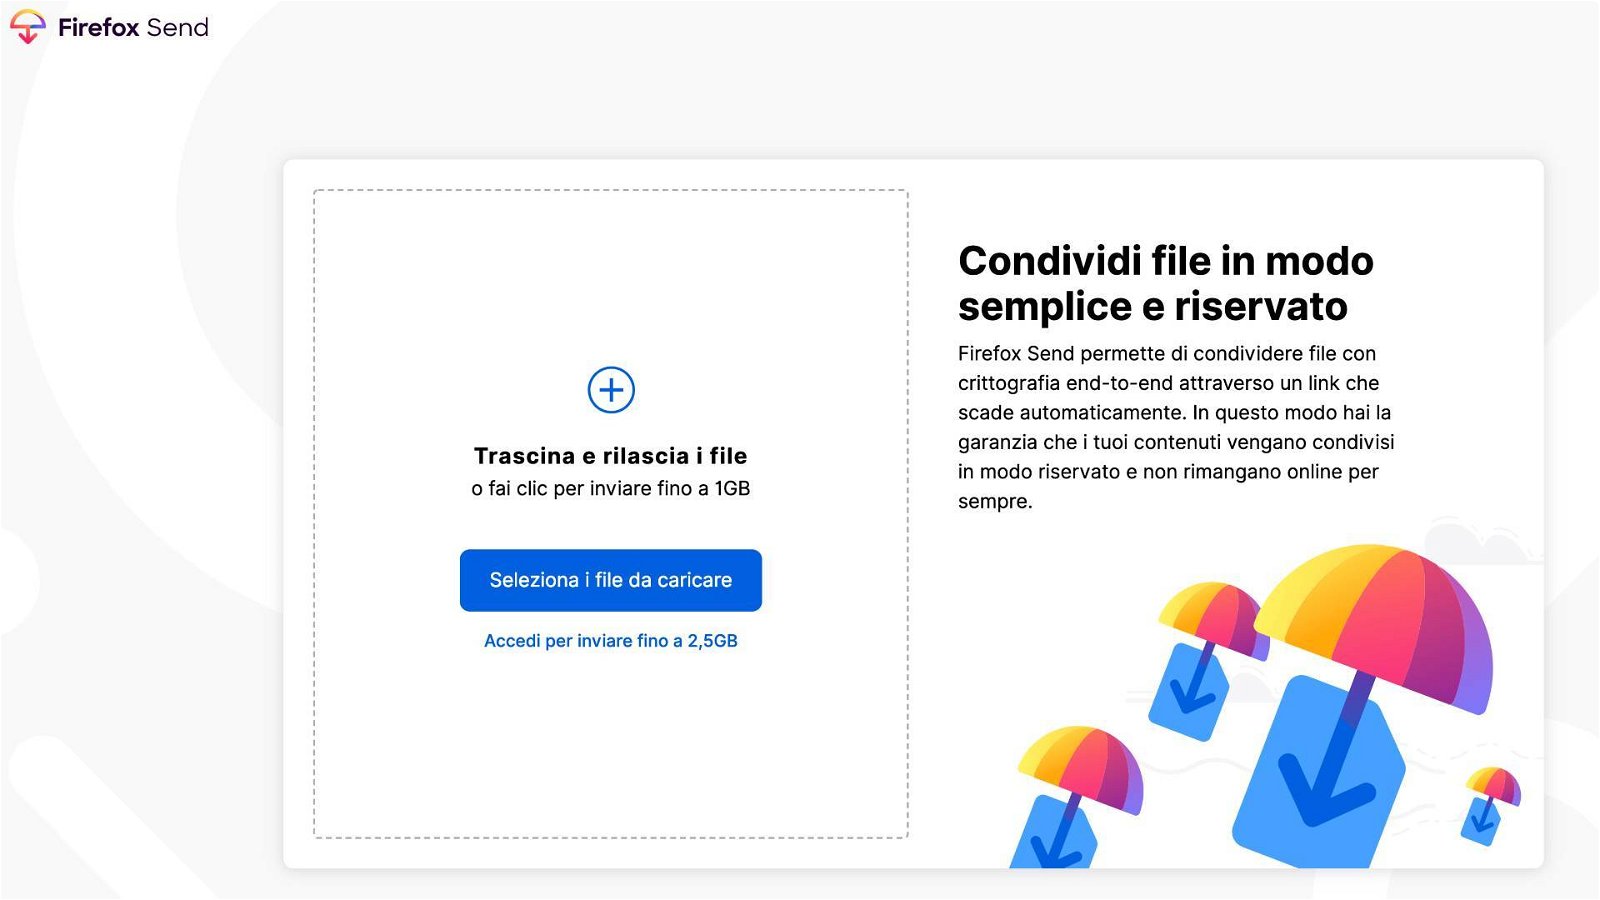 Immagine di Firefox Send in italiano, condivisione di file con cifratura e link a tempo